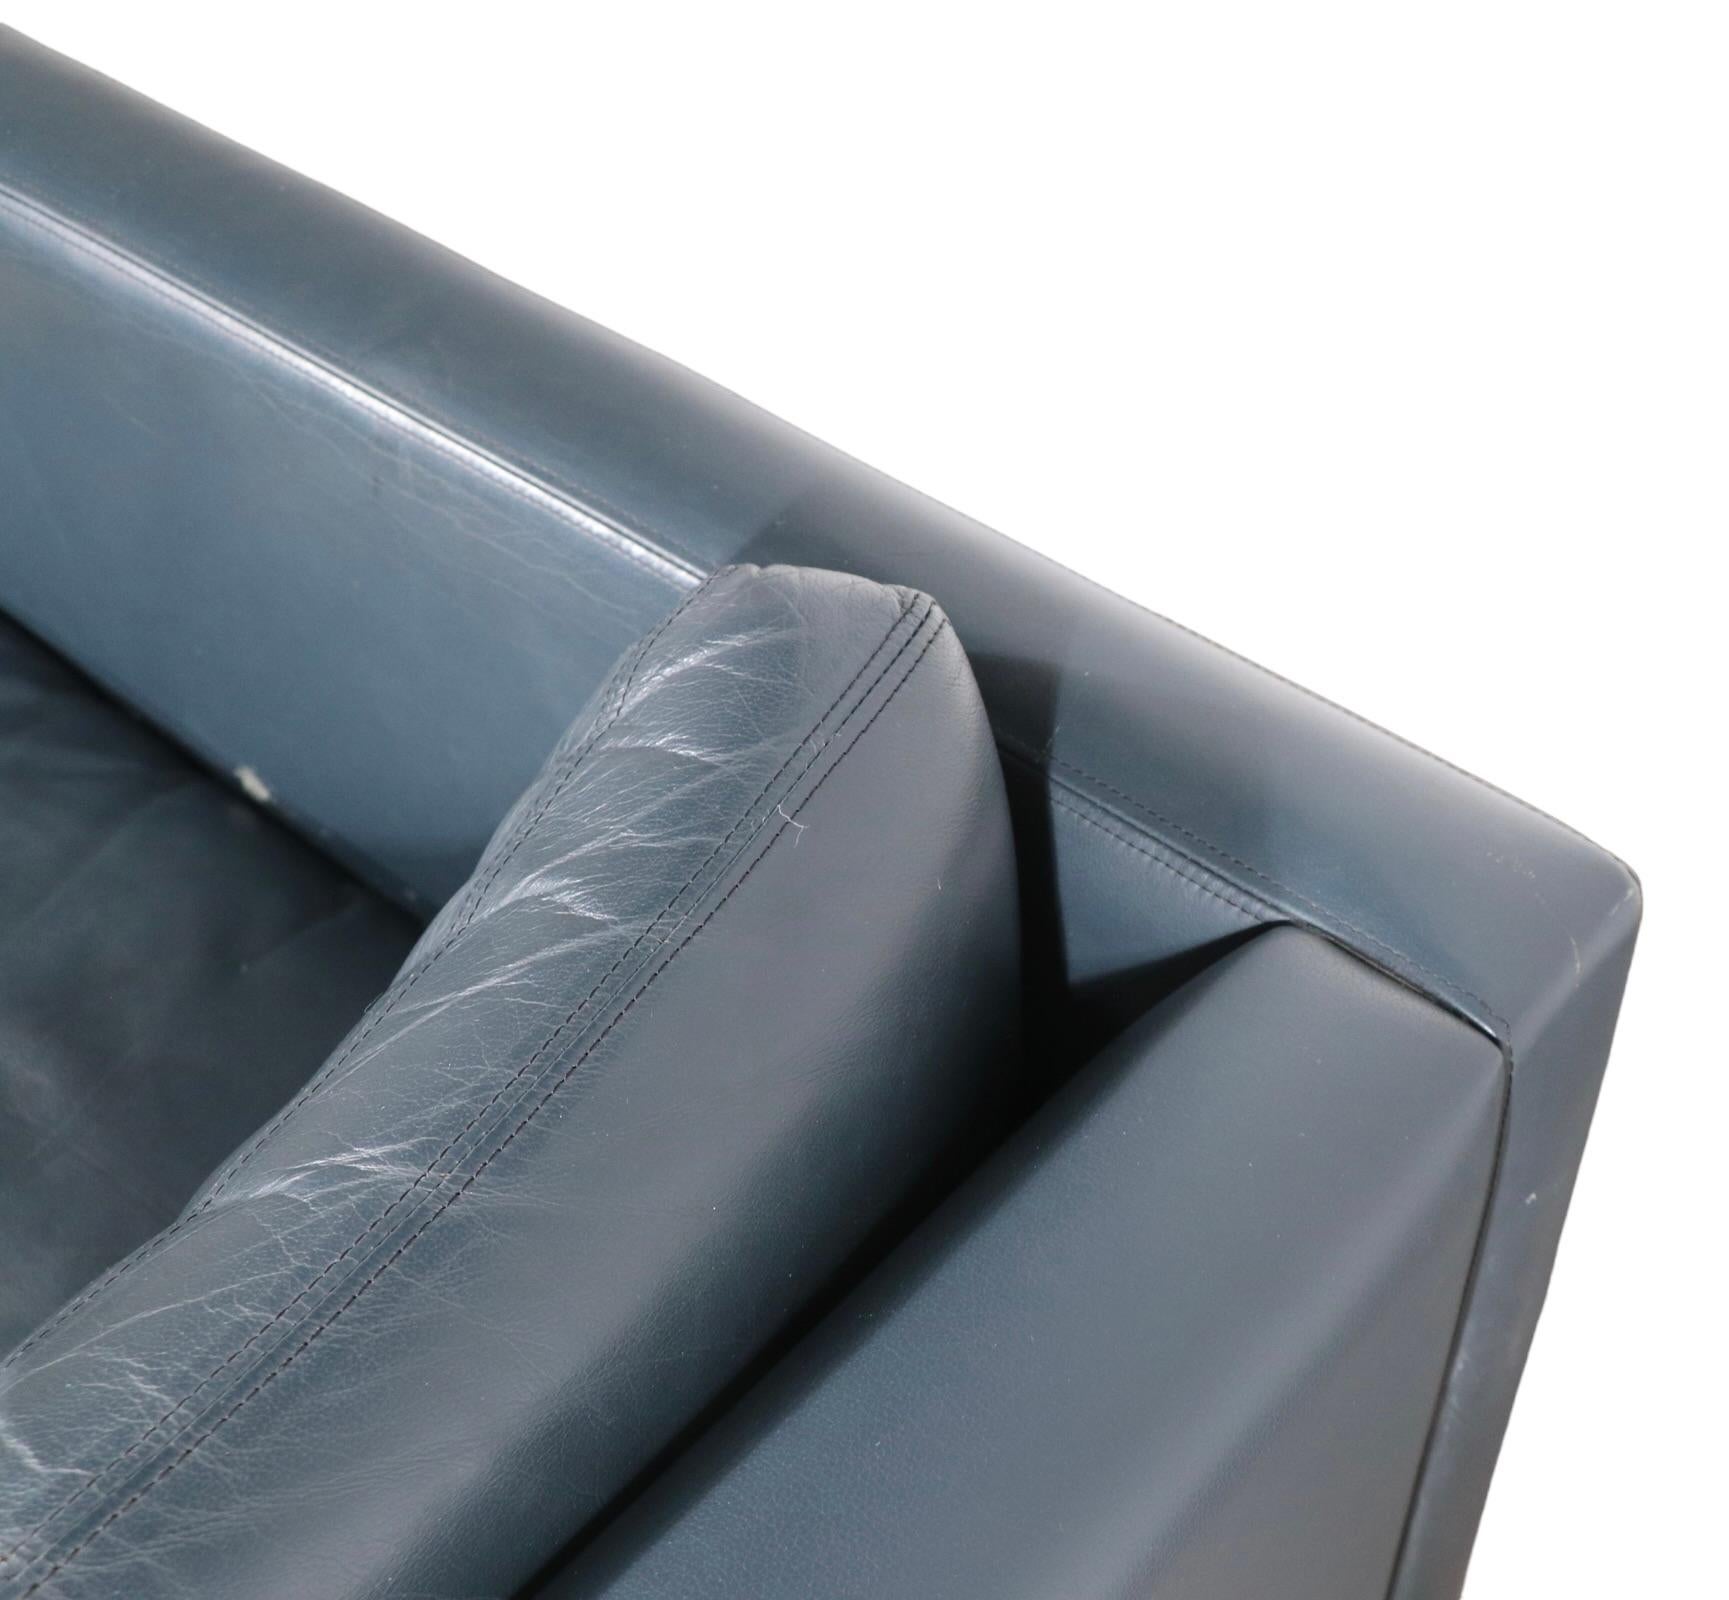 Schickes, raffiniertes und modisches Loveseat-Sofa, entworfen von Charles Pfister für Knoll. Dieses Exemplar wurde in grau-blauem Leder ausgeführt, es ist in gutem, originalem Zustand, zeigt leichte kosmetische Abnutzungen, normal und altersgemäß.